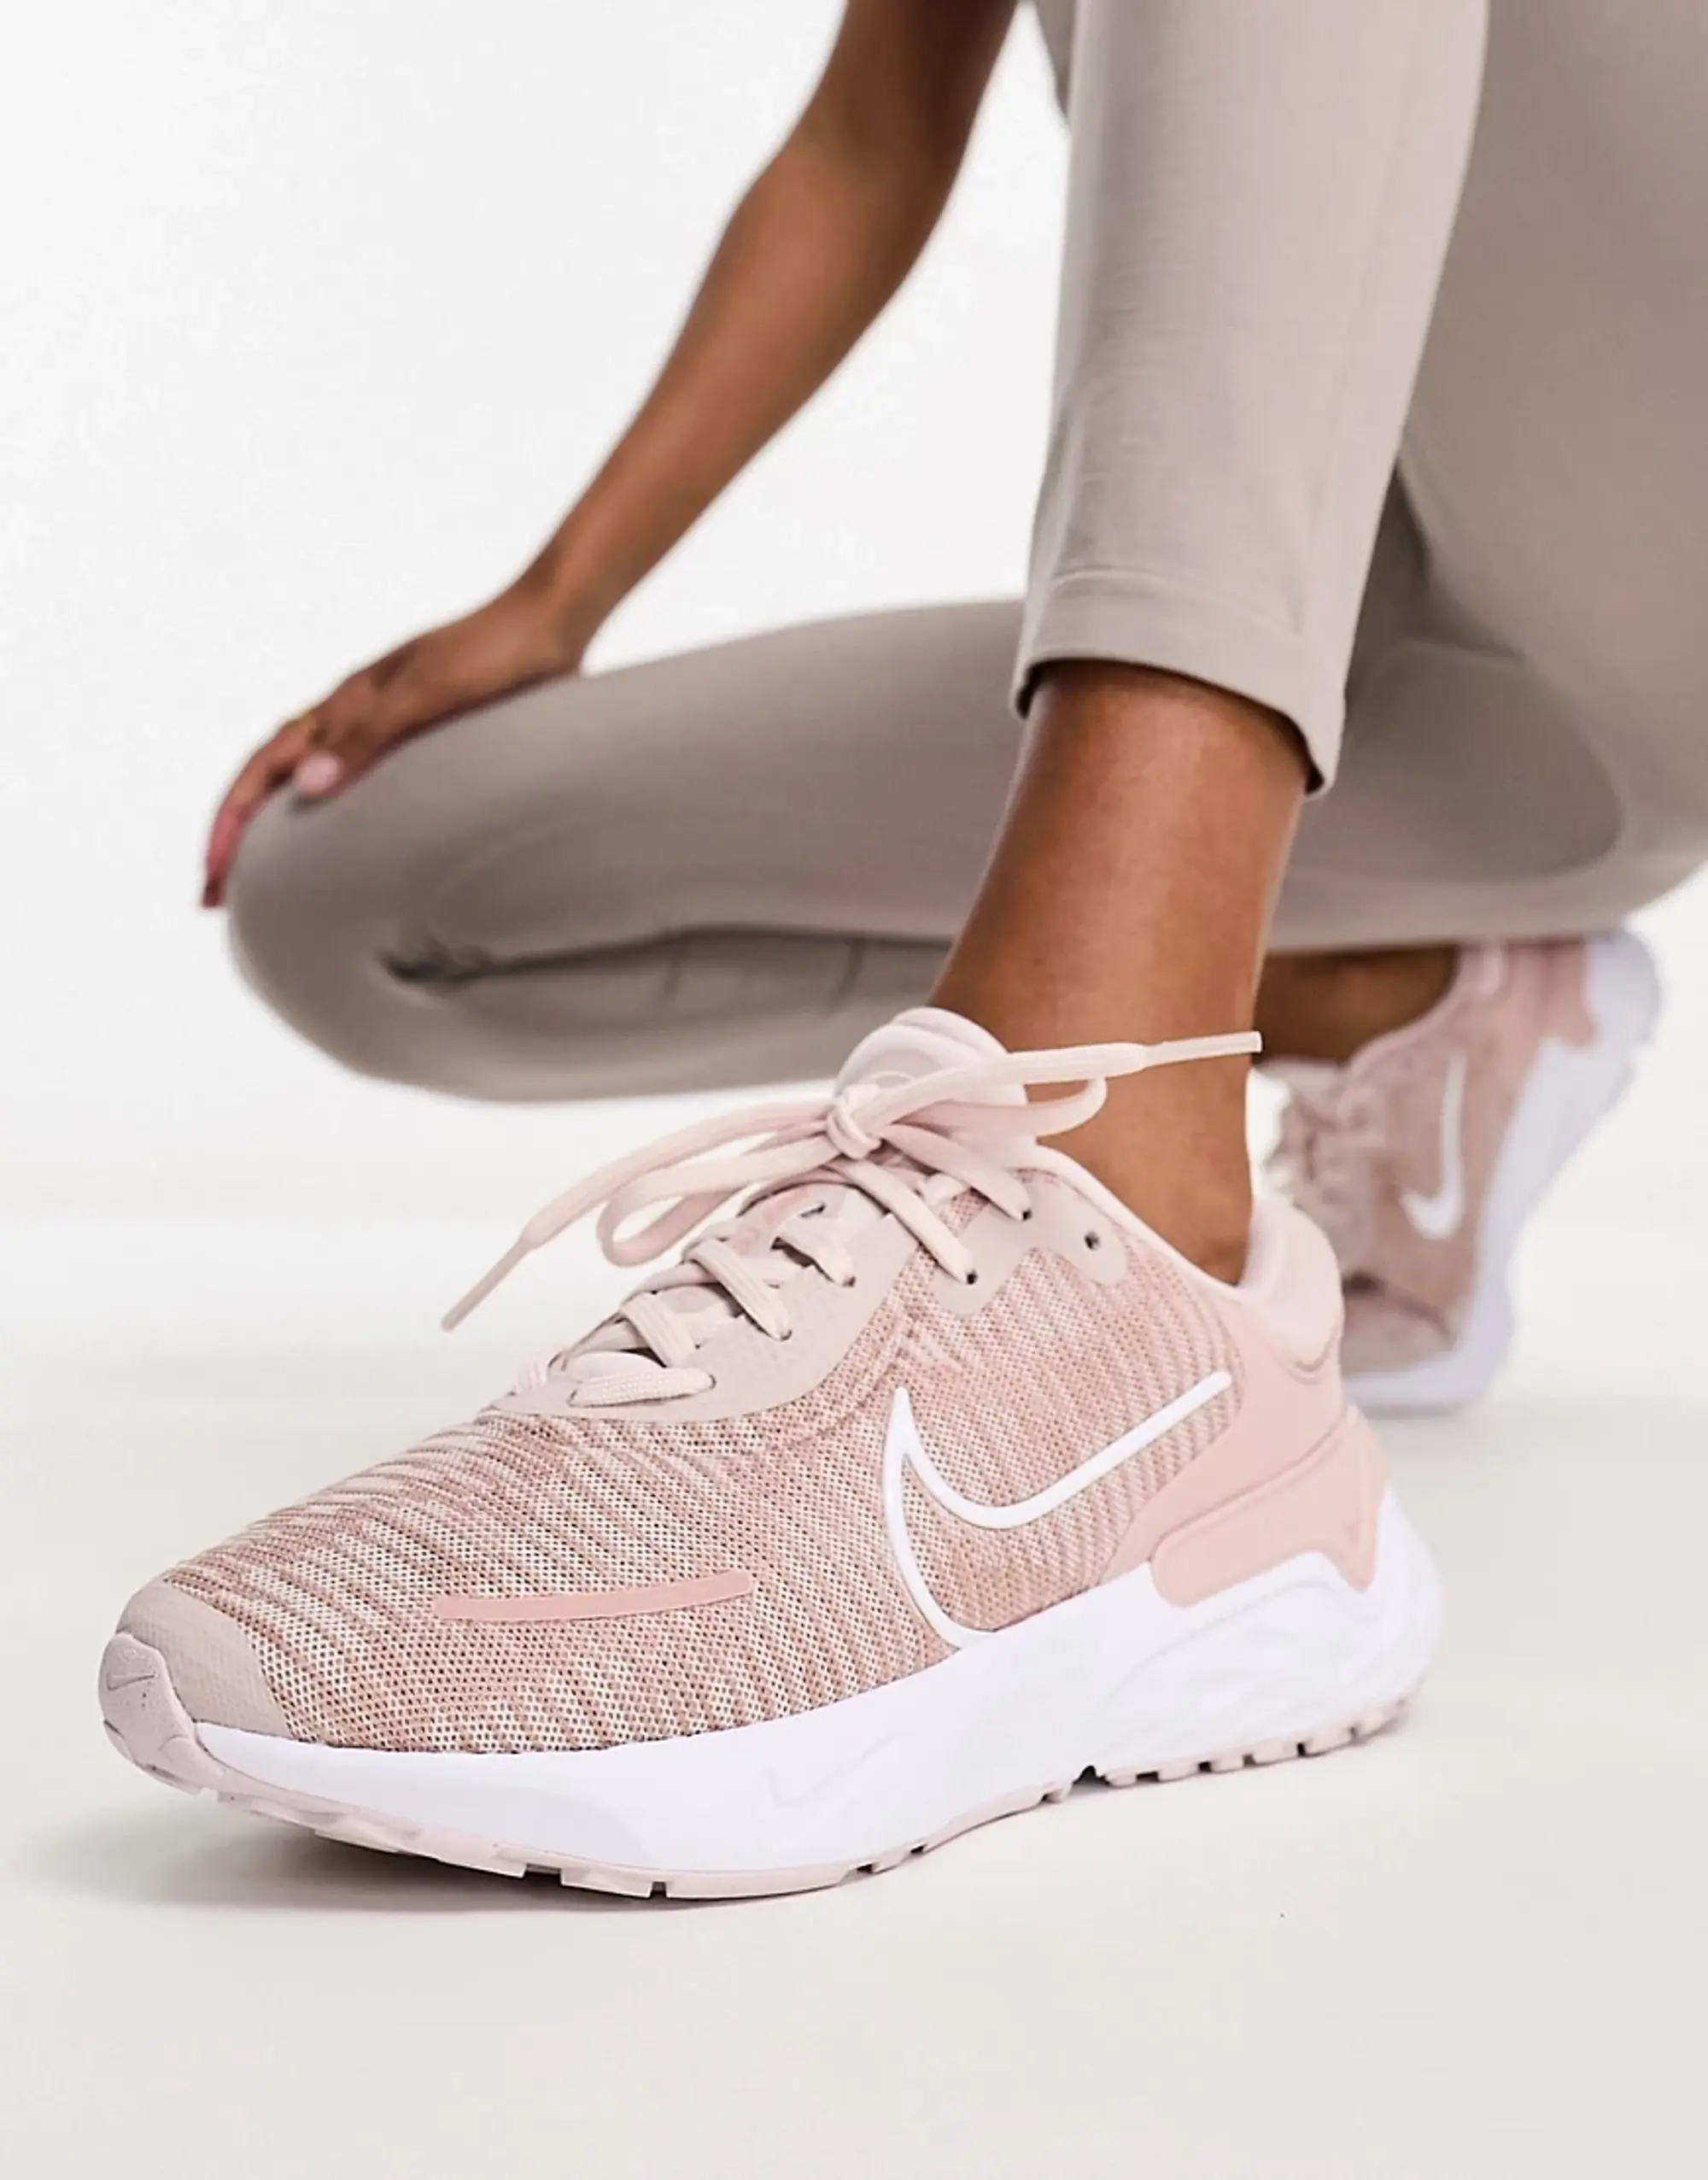 Nike Renew Run 4 Women's Road Running Shoes - Pink